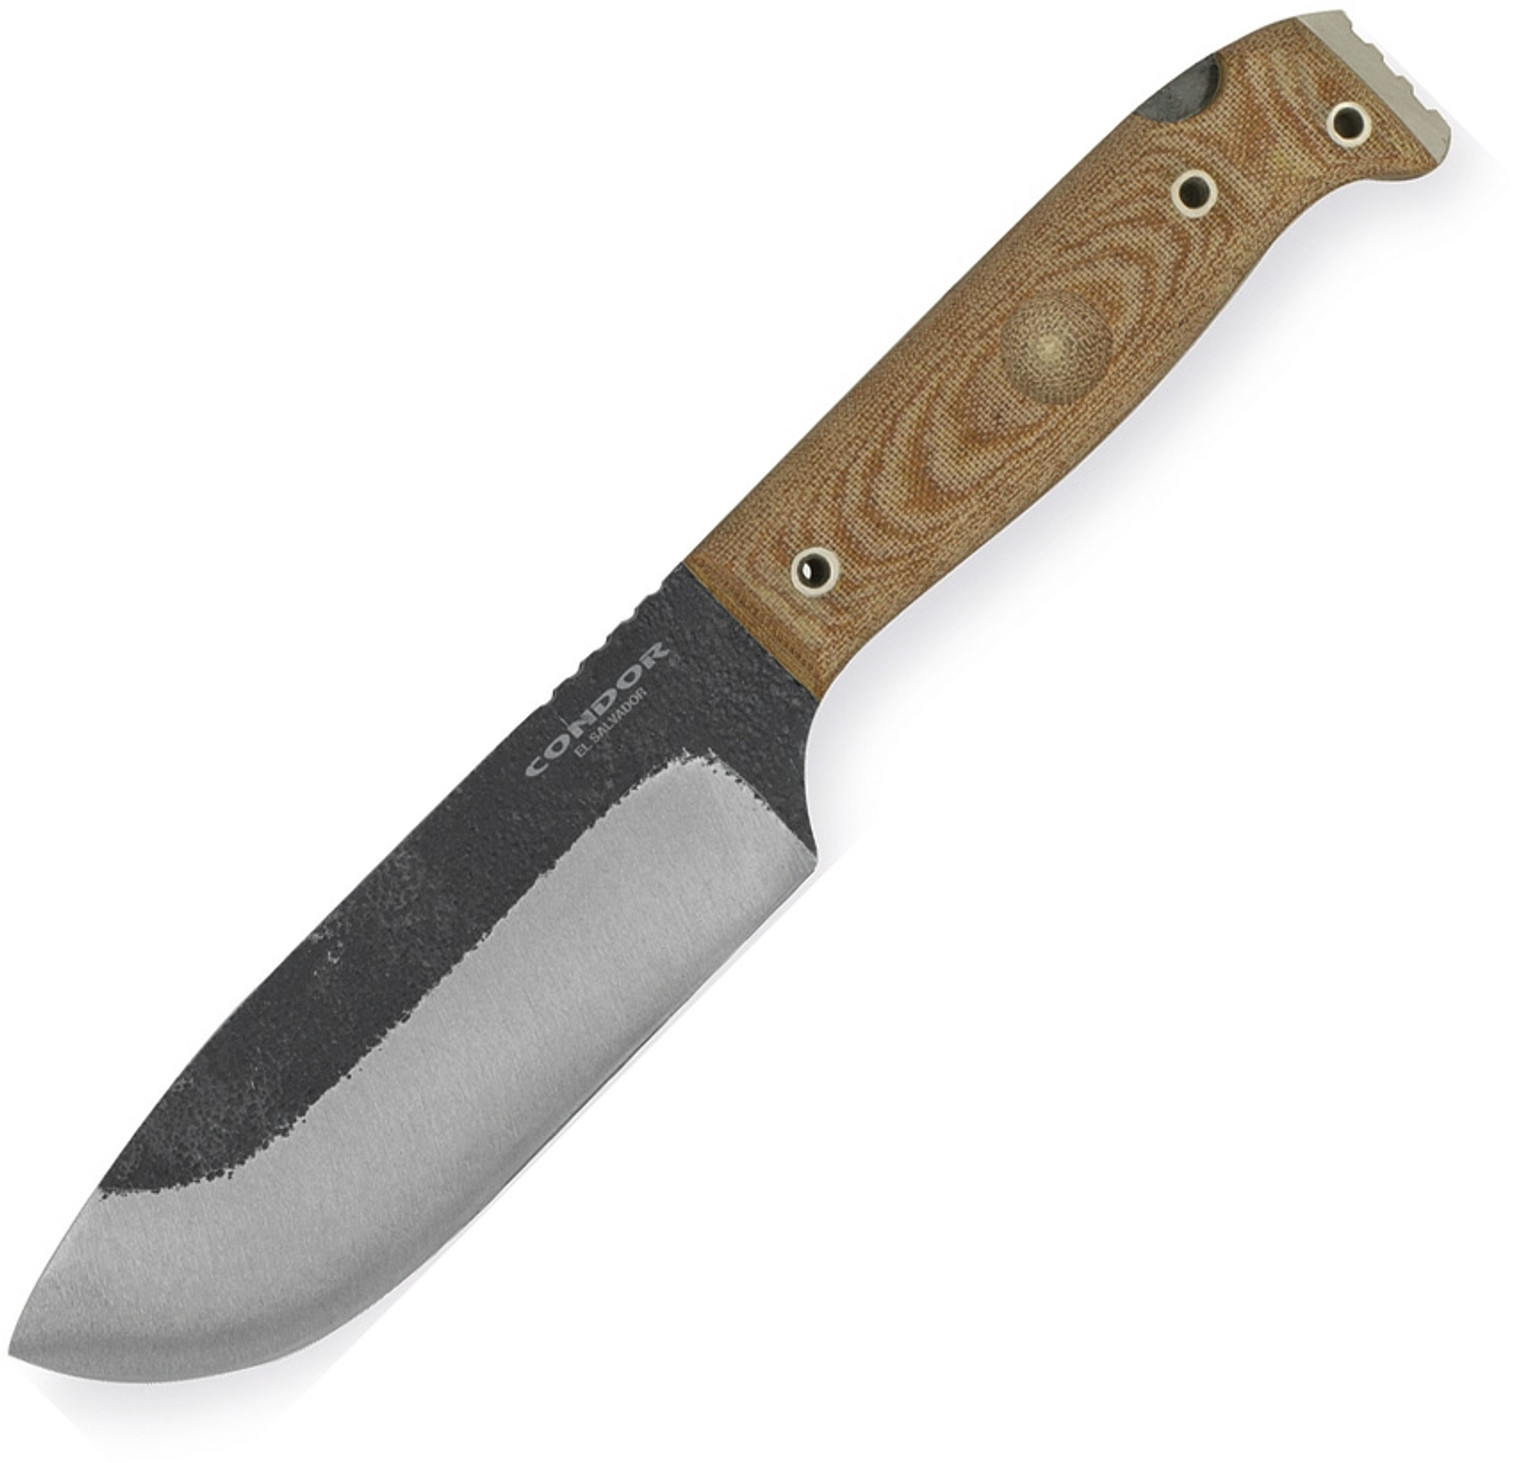 Selknam Knife